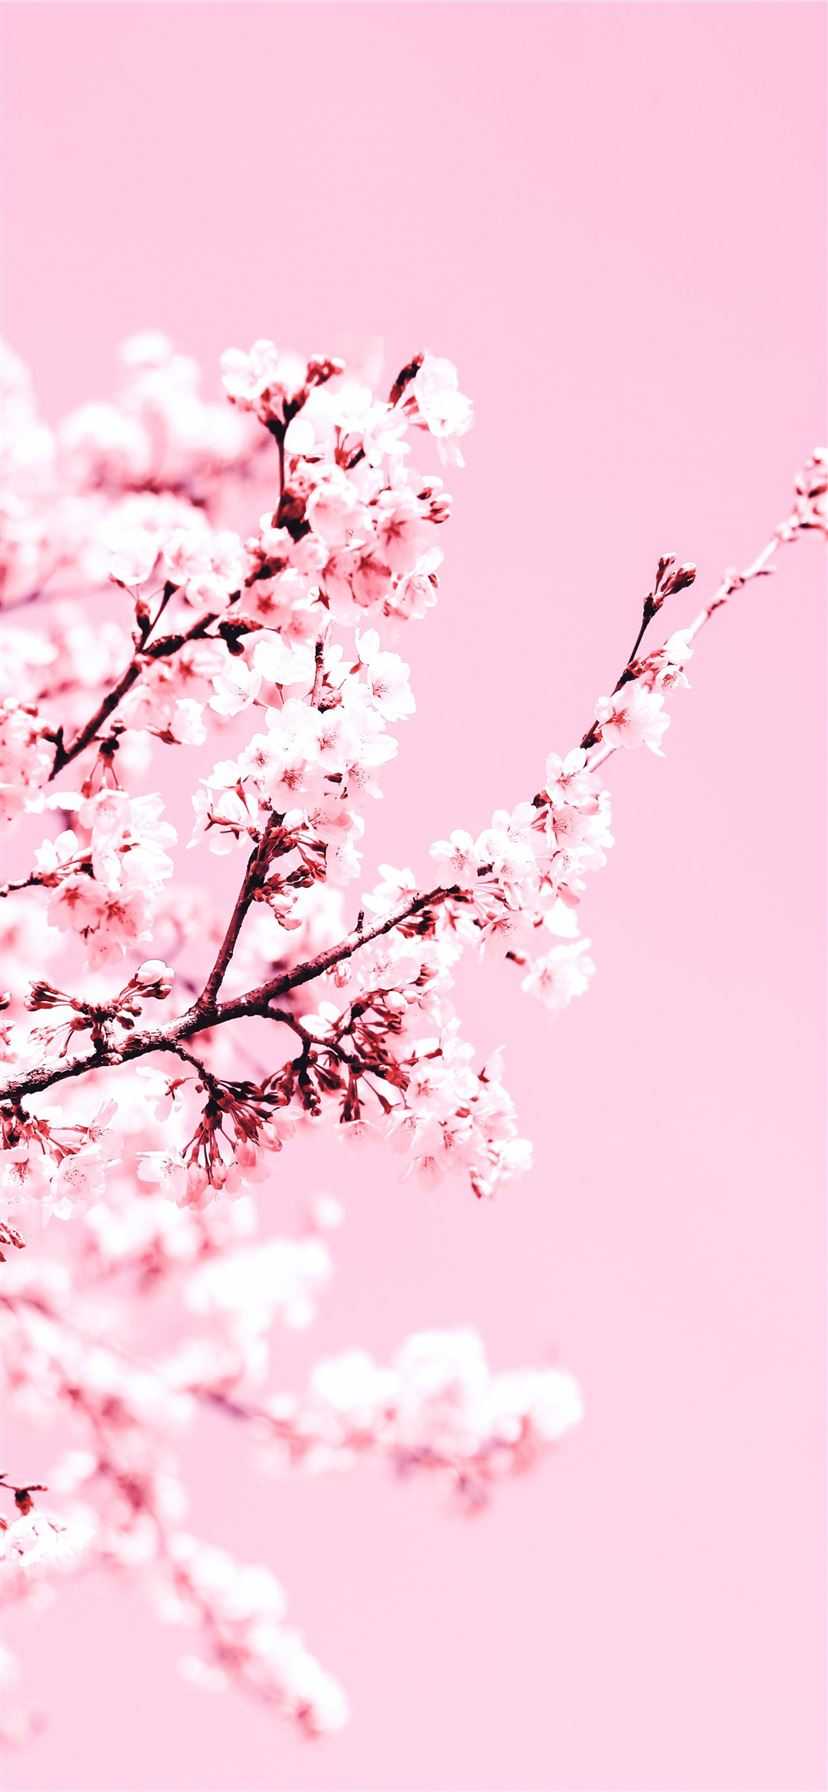 Cherry Blossom Wallpaper - NawPic